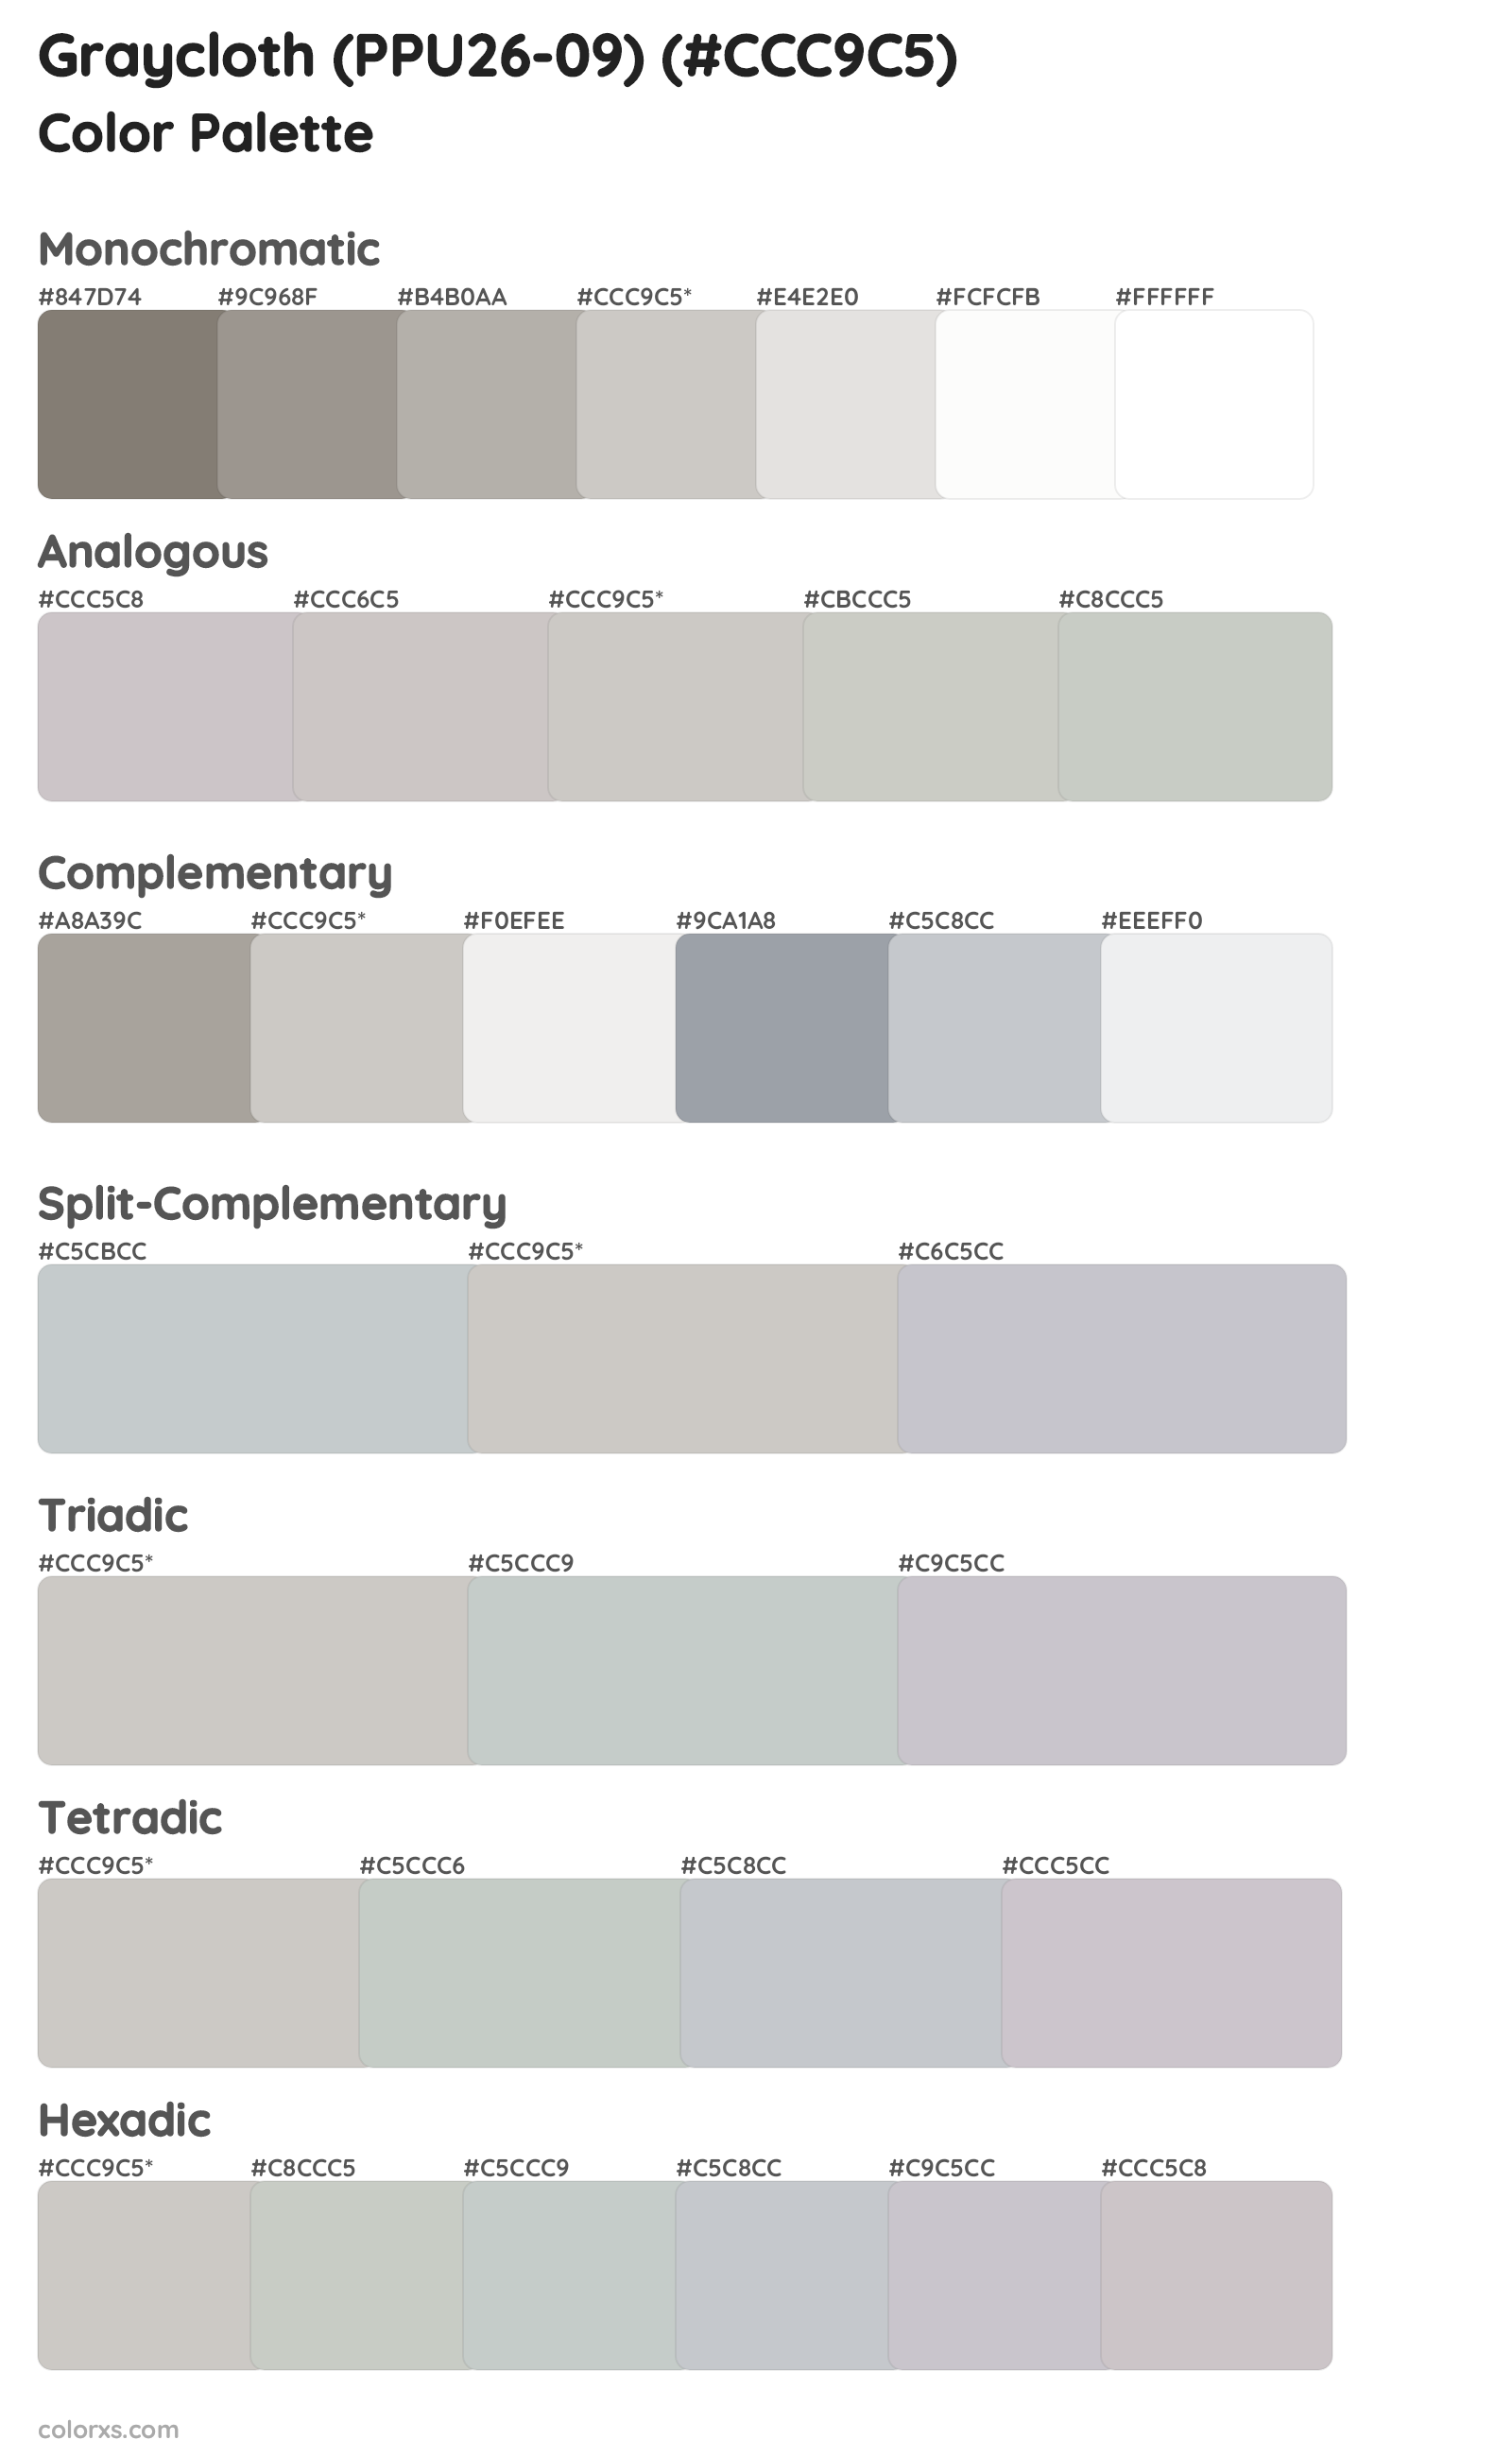 Graycloth (PPU26-09) Color Scheme Palettes